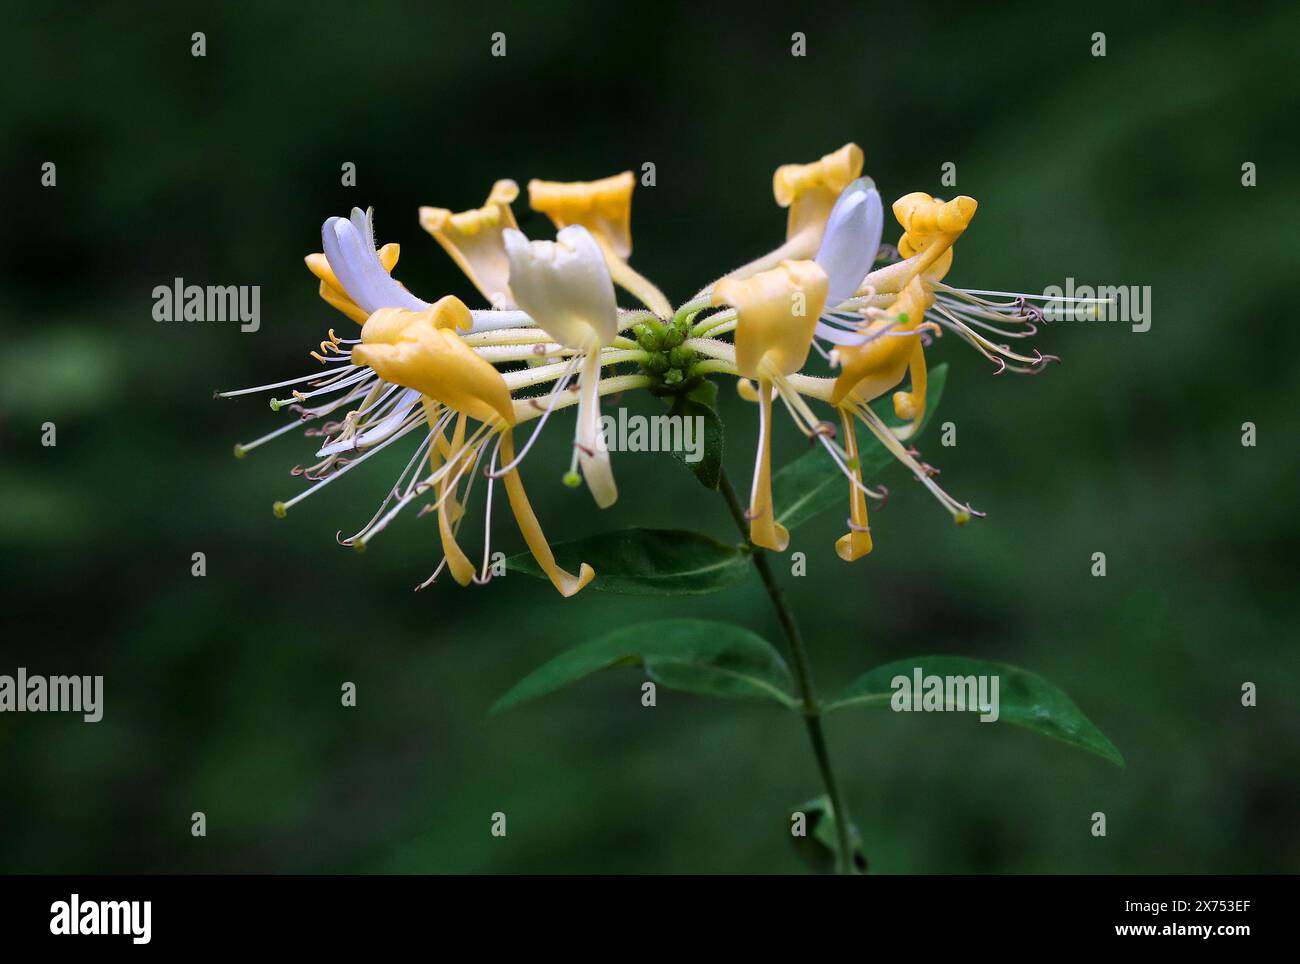 Honeysuckle, Lonicera periclymenum, Caprifoliaceae. British wild flower. Stock Photo